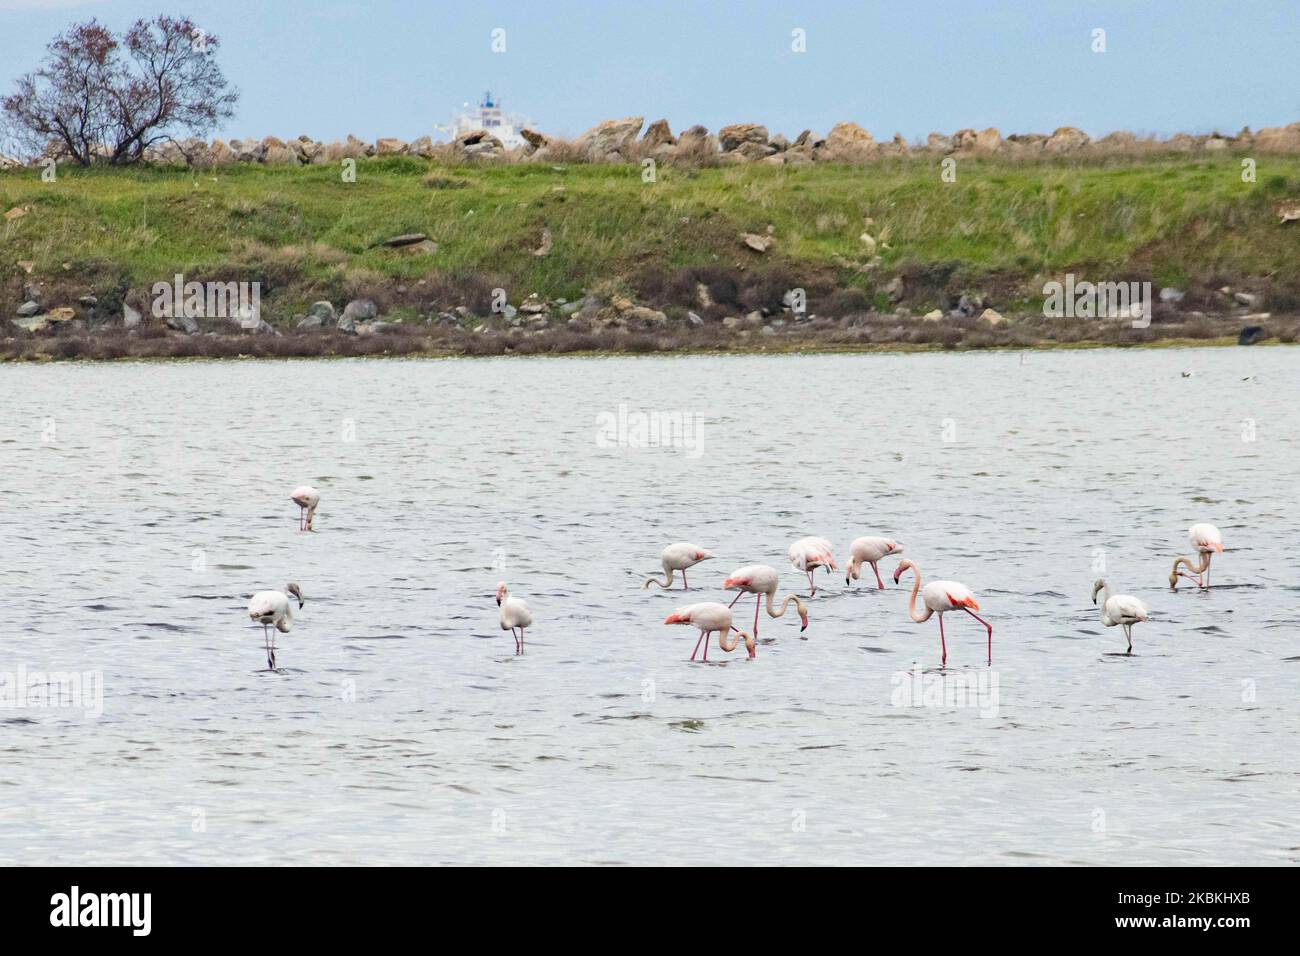 Un troupeau de flamants roses, des oiseaux de la famille des Phénicoptériformes comme vu dans le lagon de Kalochori avec la ville de Thessalonique en arrière-plan. Les colonies de flamants roses vivent ici dans les zones humides comme un arrêt intermédiaire sur leur route de migration, qui fait partie du parc national du delta d'Axios dans le nord de la Grèce. Le parc national du delta d'Axios près de la ville de Thessalonique en Grèce se compose de 4 rivières Axios, Galikos, Loudias et Aliakmonas, se trouvent 295 espèces d'oiseaux, 350 espèces de plantes, 40 espèces de mammifères, 18 espèces de reptiles, 9 espèces d'amphibiens, 7 espèces d'invertébrés. 25 mars 2020 (photo de Nicolas ECON Banque D'Images